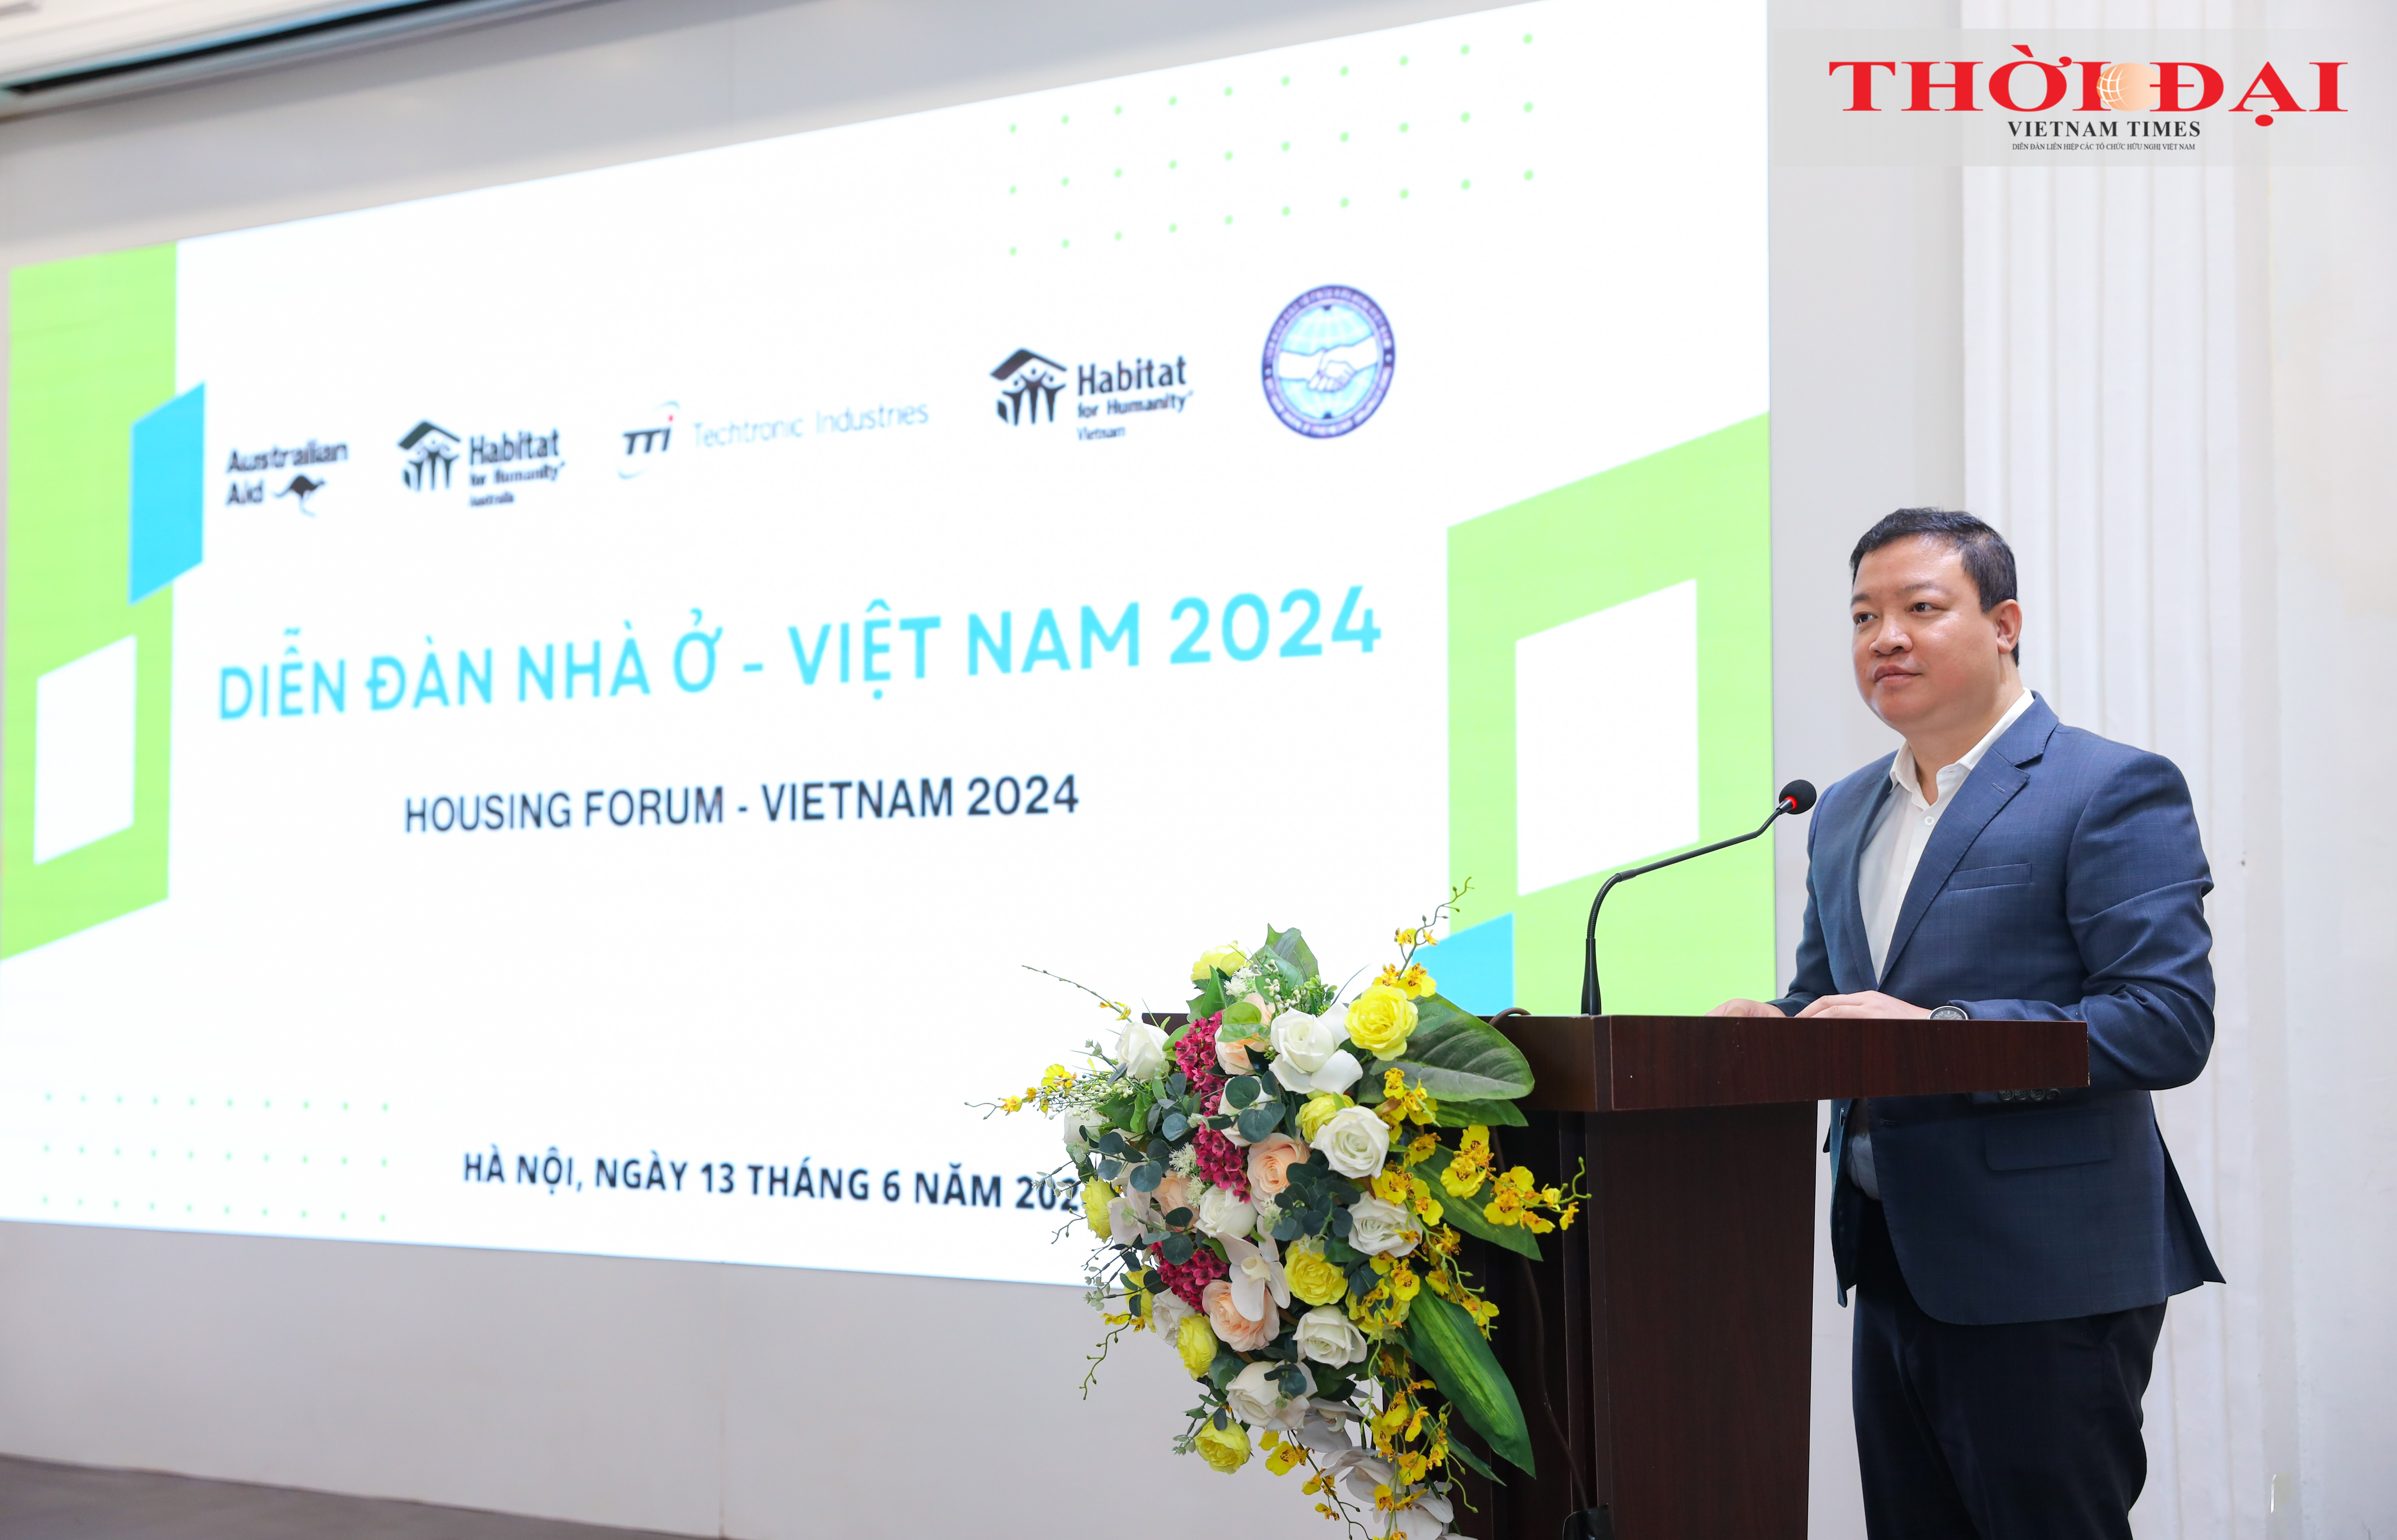 Diễn đàn Nhà ở Việt Nam 2024: Tìm kiếm giải pháp nhà ở bền vững